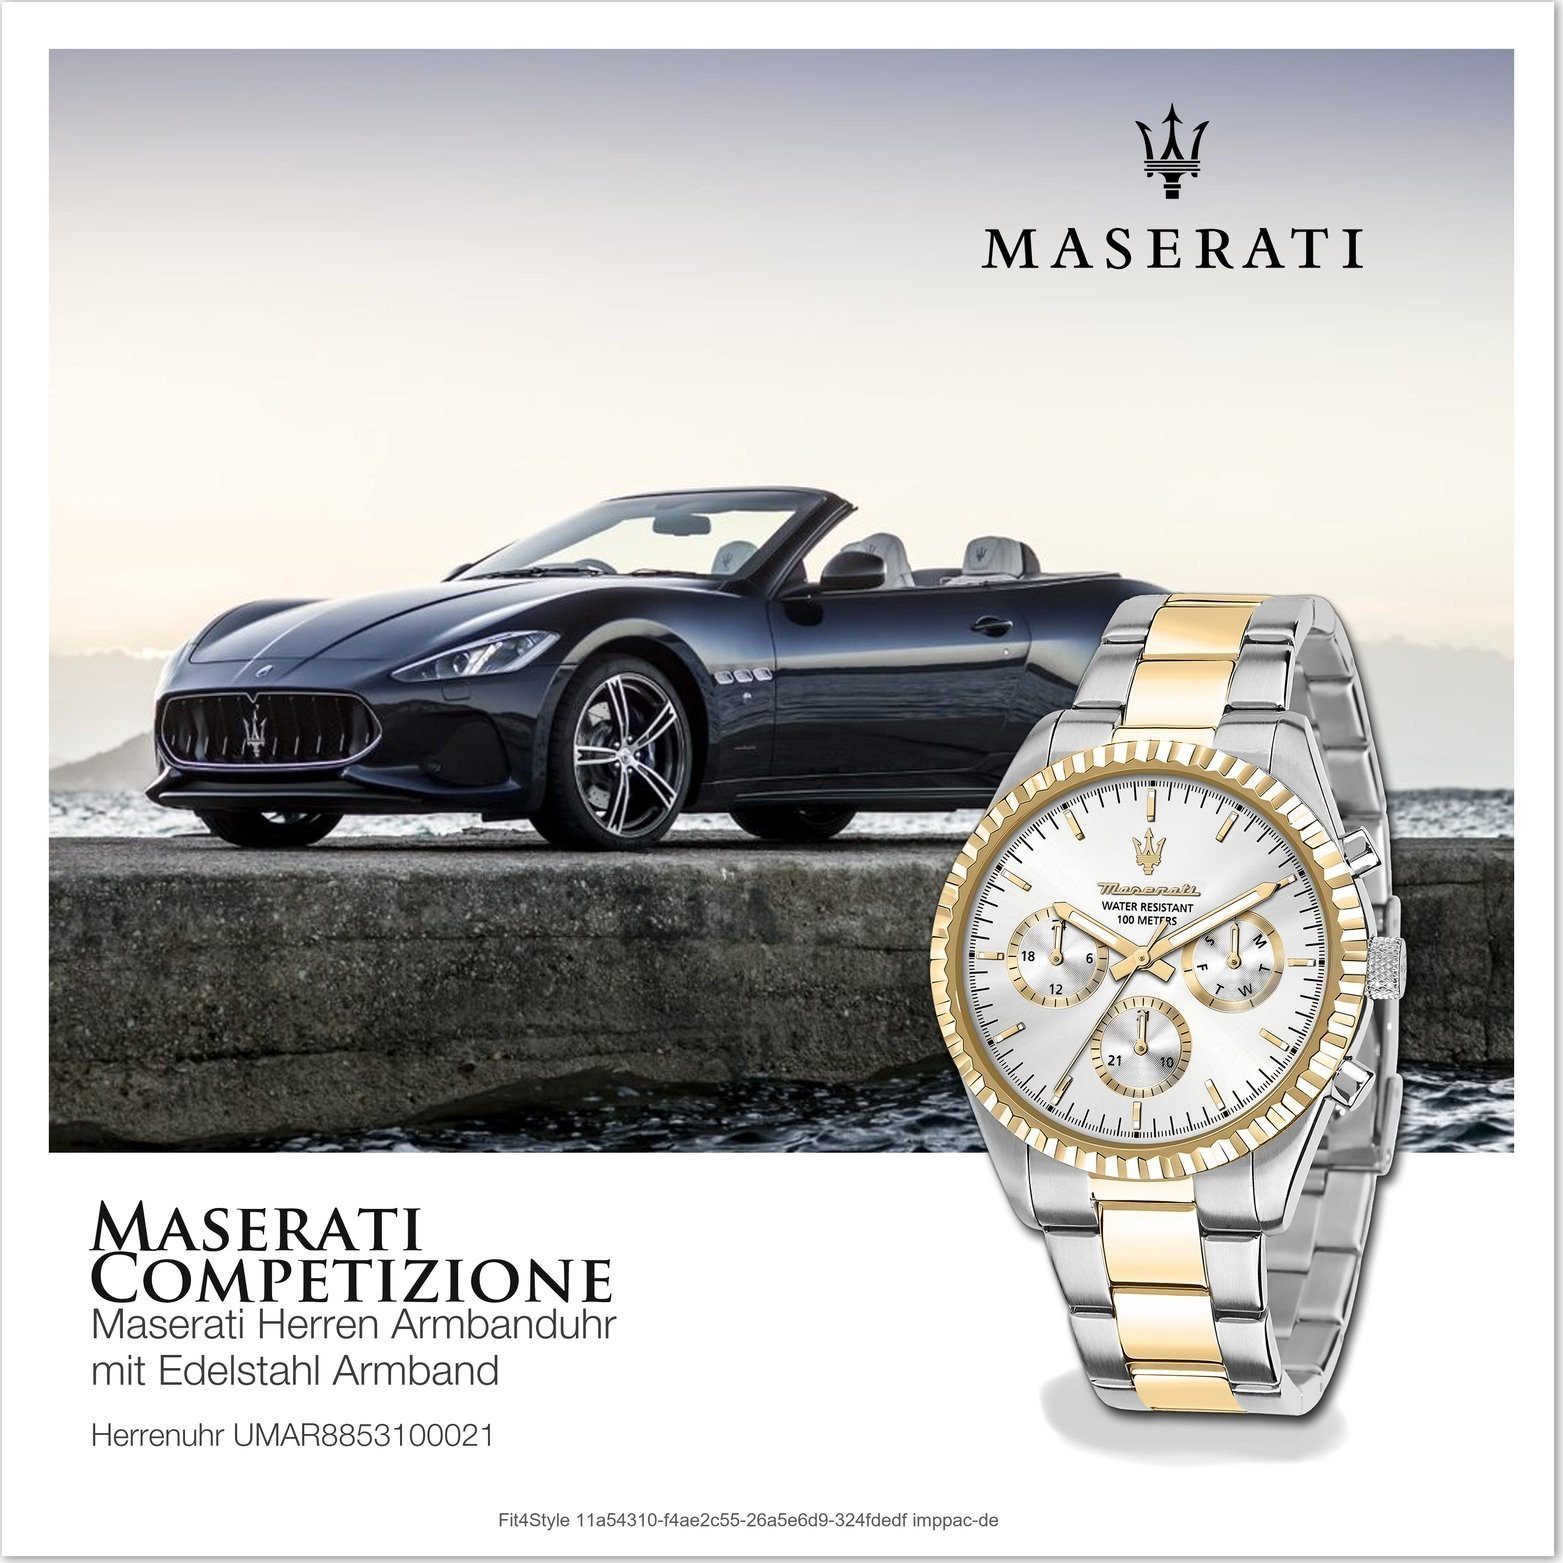 MASERATI Multifunktionsuhr Maserati Edelstahl Multifunktion, Herrenuhr Edelstahlarmband, silber rundes groß (ca 51,5x43mm) Gehäuse